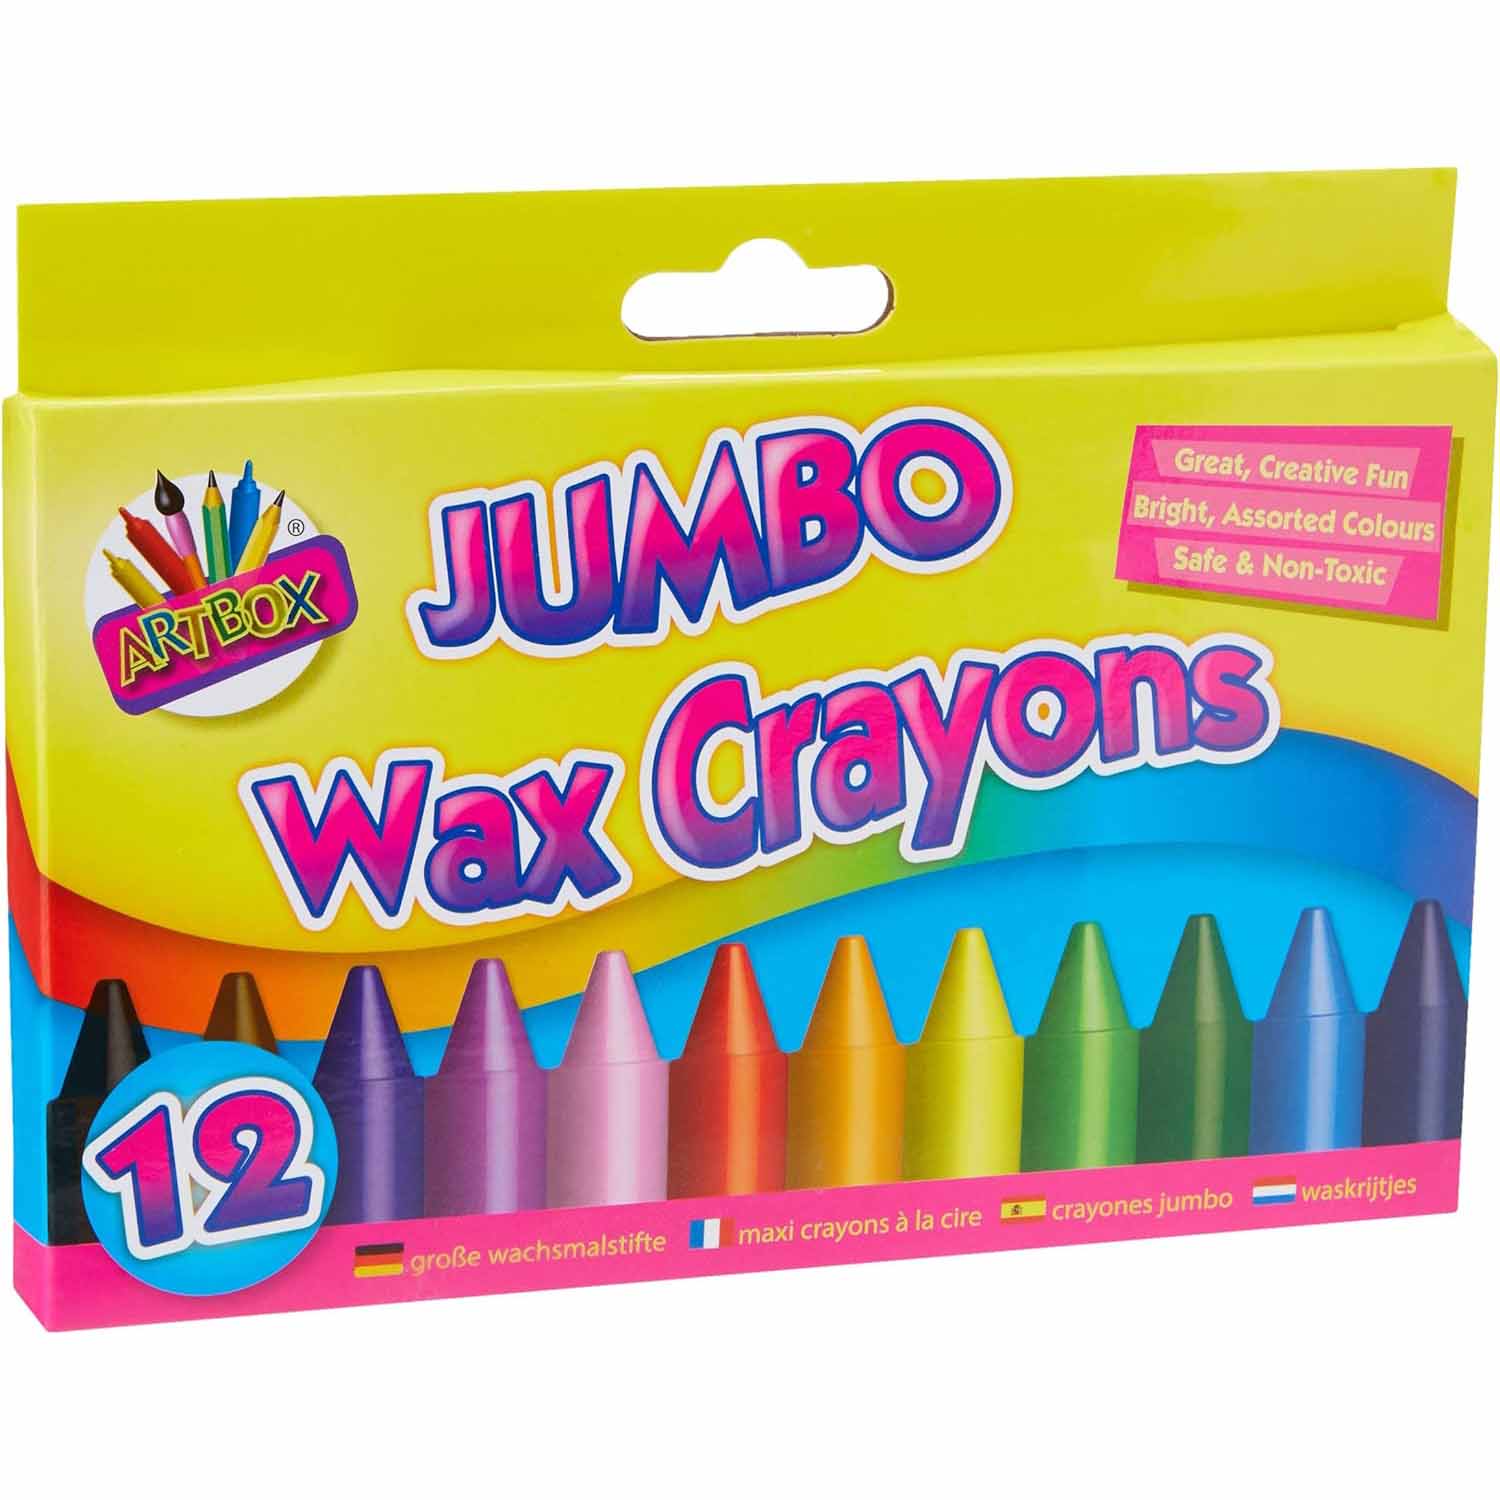 12 Jumbo Wax Crayons